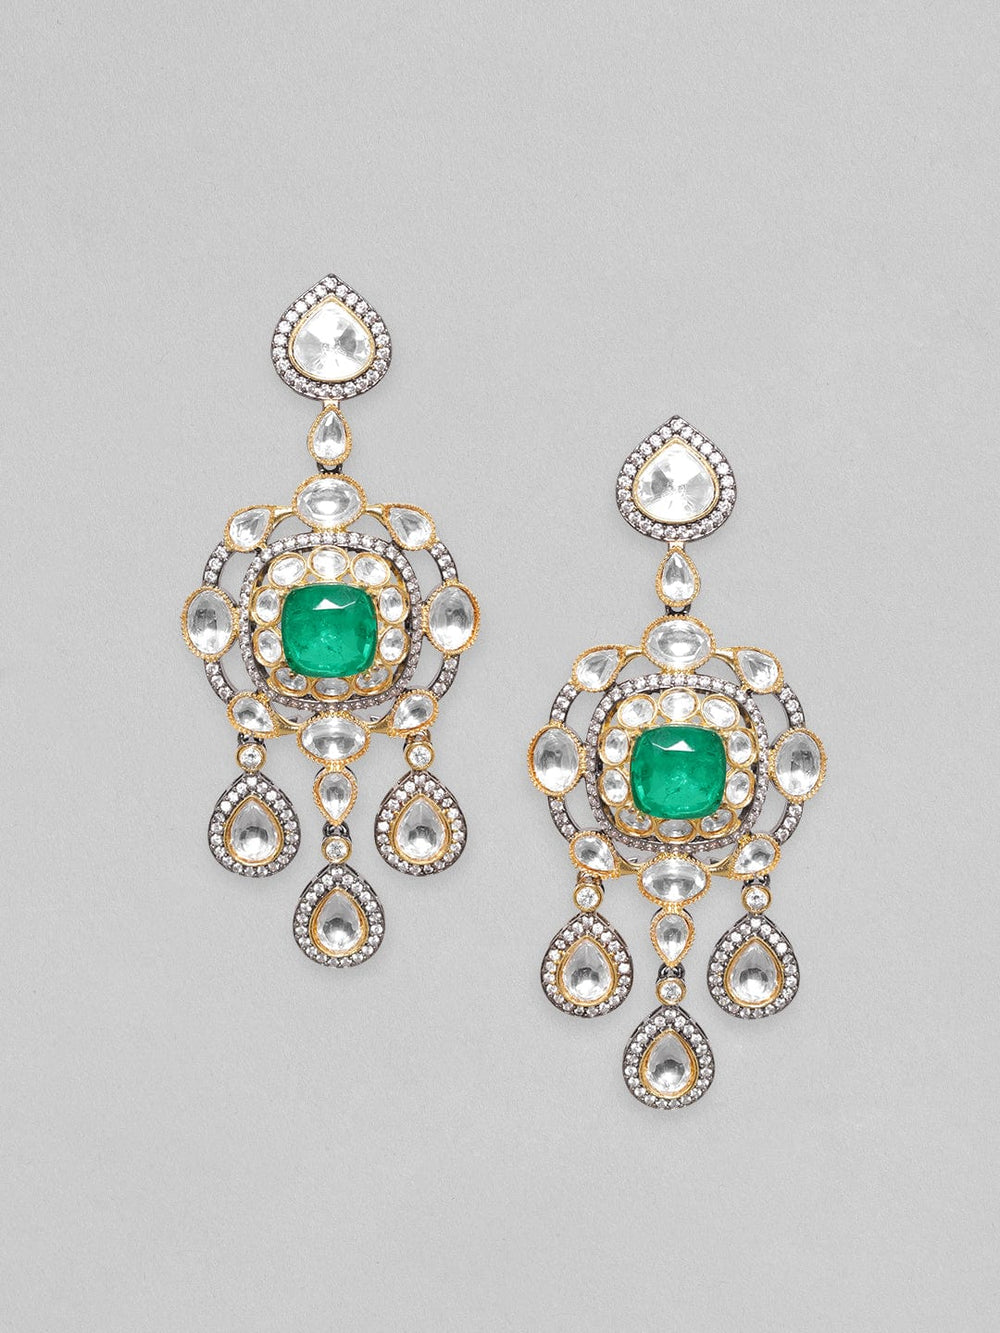 Rubans Antique Gold Plated Brilliant Cut Zirconia & Kundan, Emerald Green Doublet Vintage Royal Chandelier Earrings Earrings